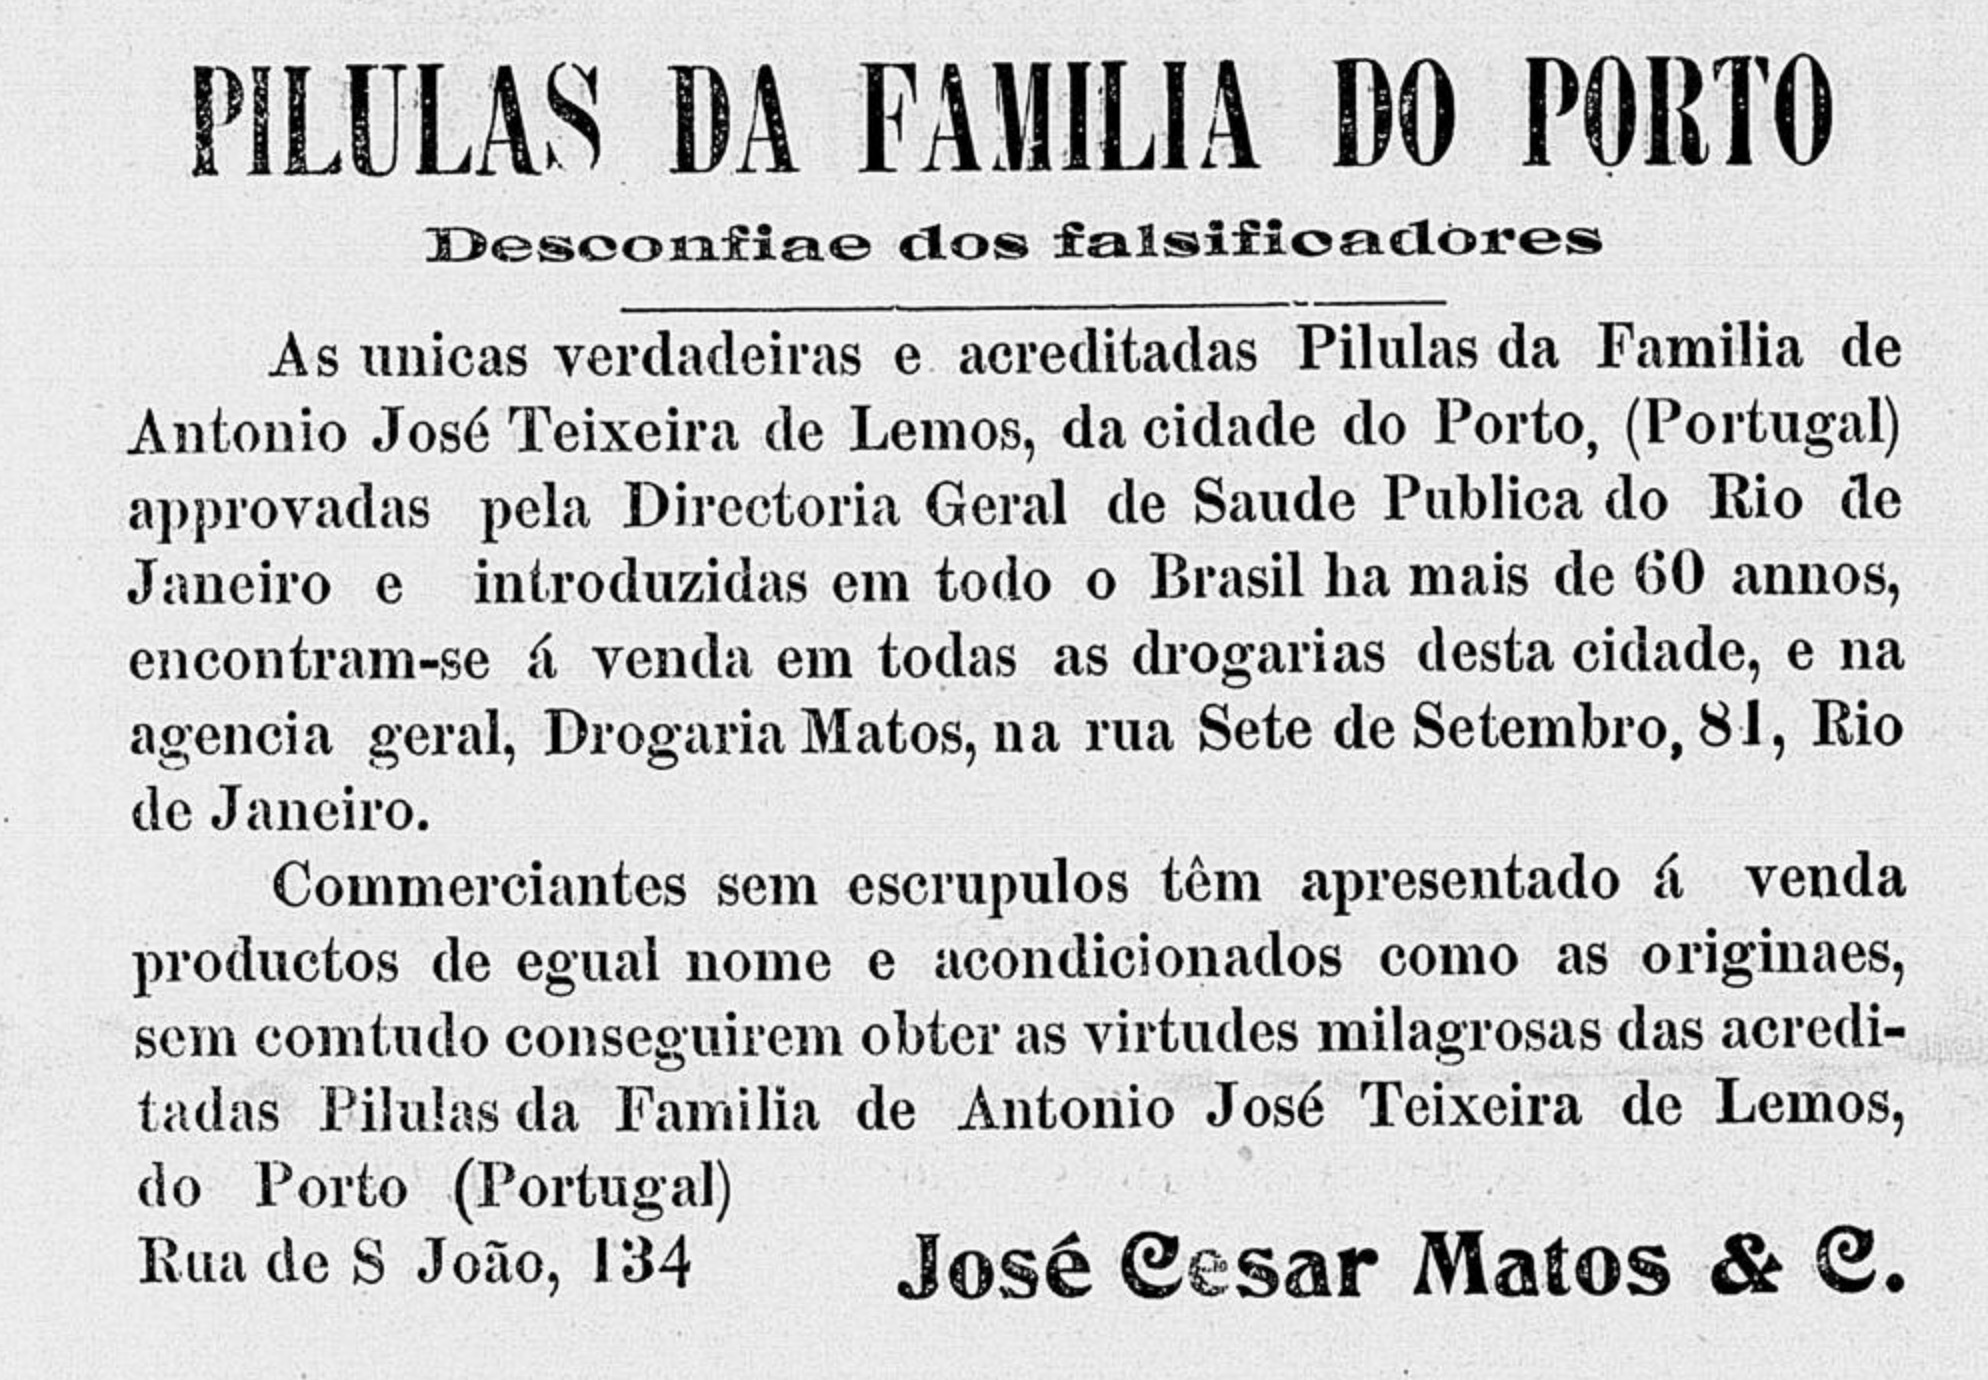 Anúncio das Pílulas da Família do Porto veiculada em 1912 informando sobre falsificações do produto no mercado